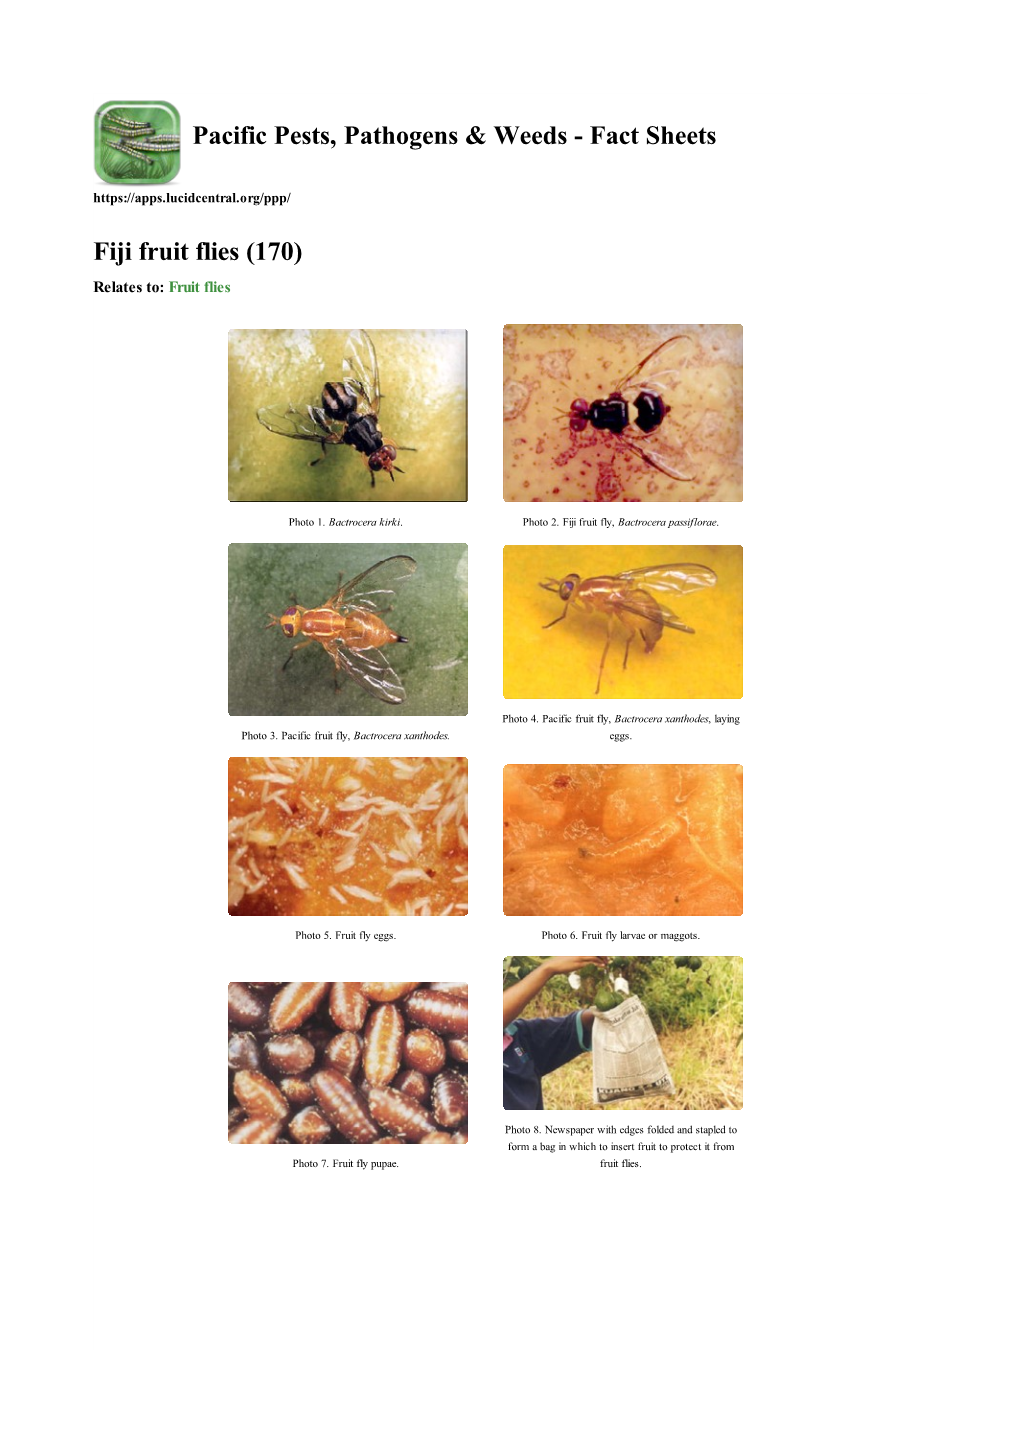 Fiji Fruit Flies (170) Relates To: Fruit Flies